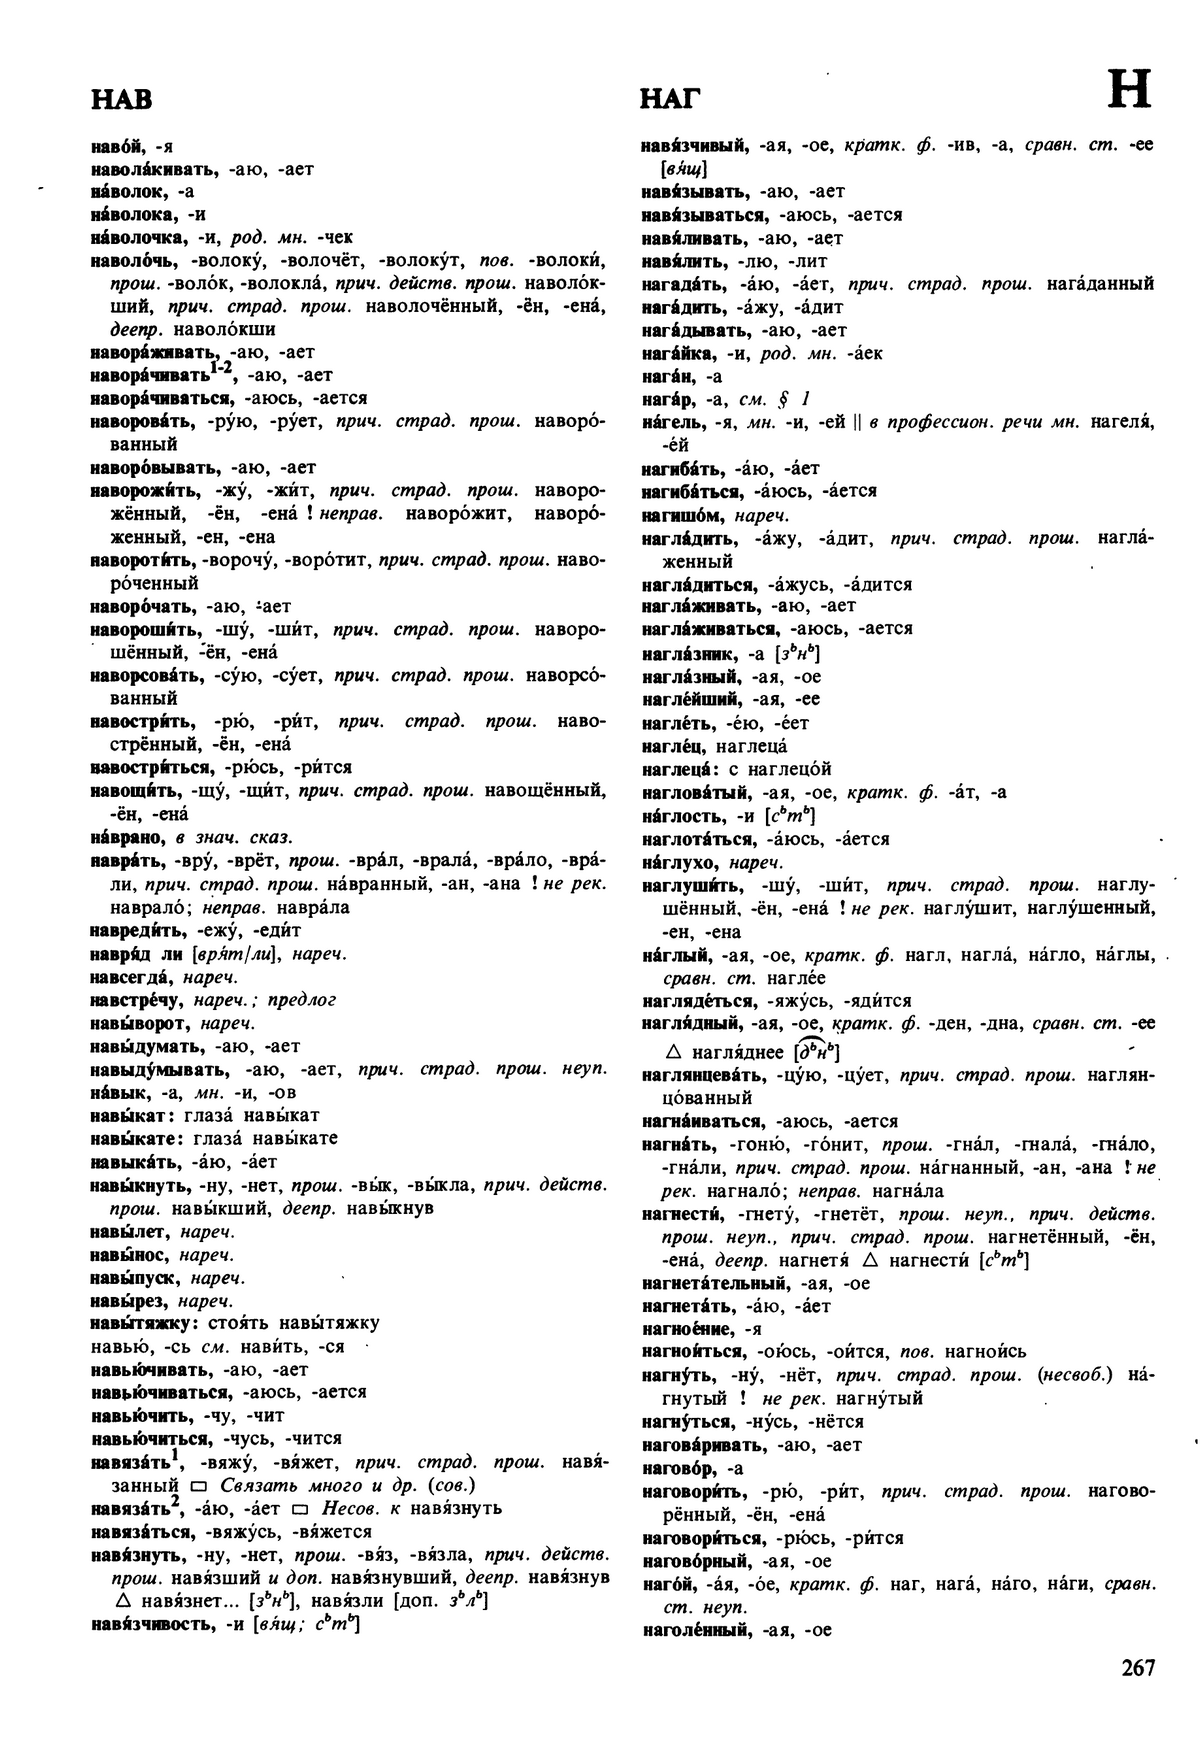 Фотокопия pdf / скан страницы 267 орфоэпического словаря под редакцией Аванесова (5 издание, 1989 год)